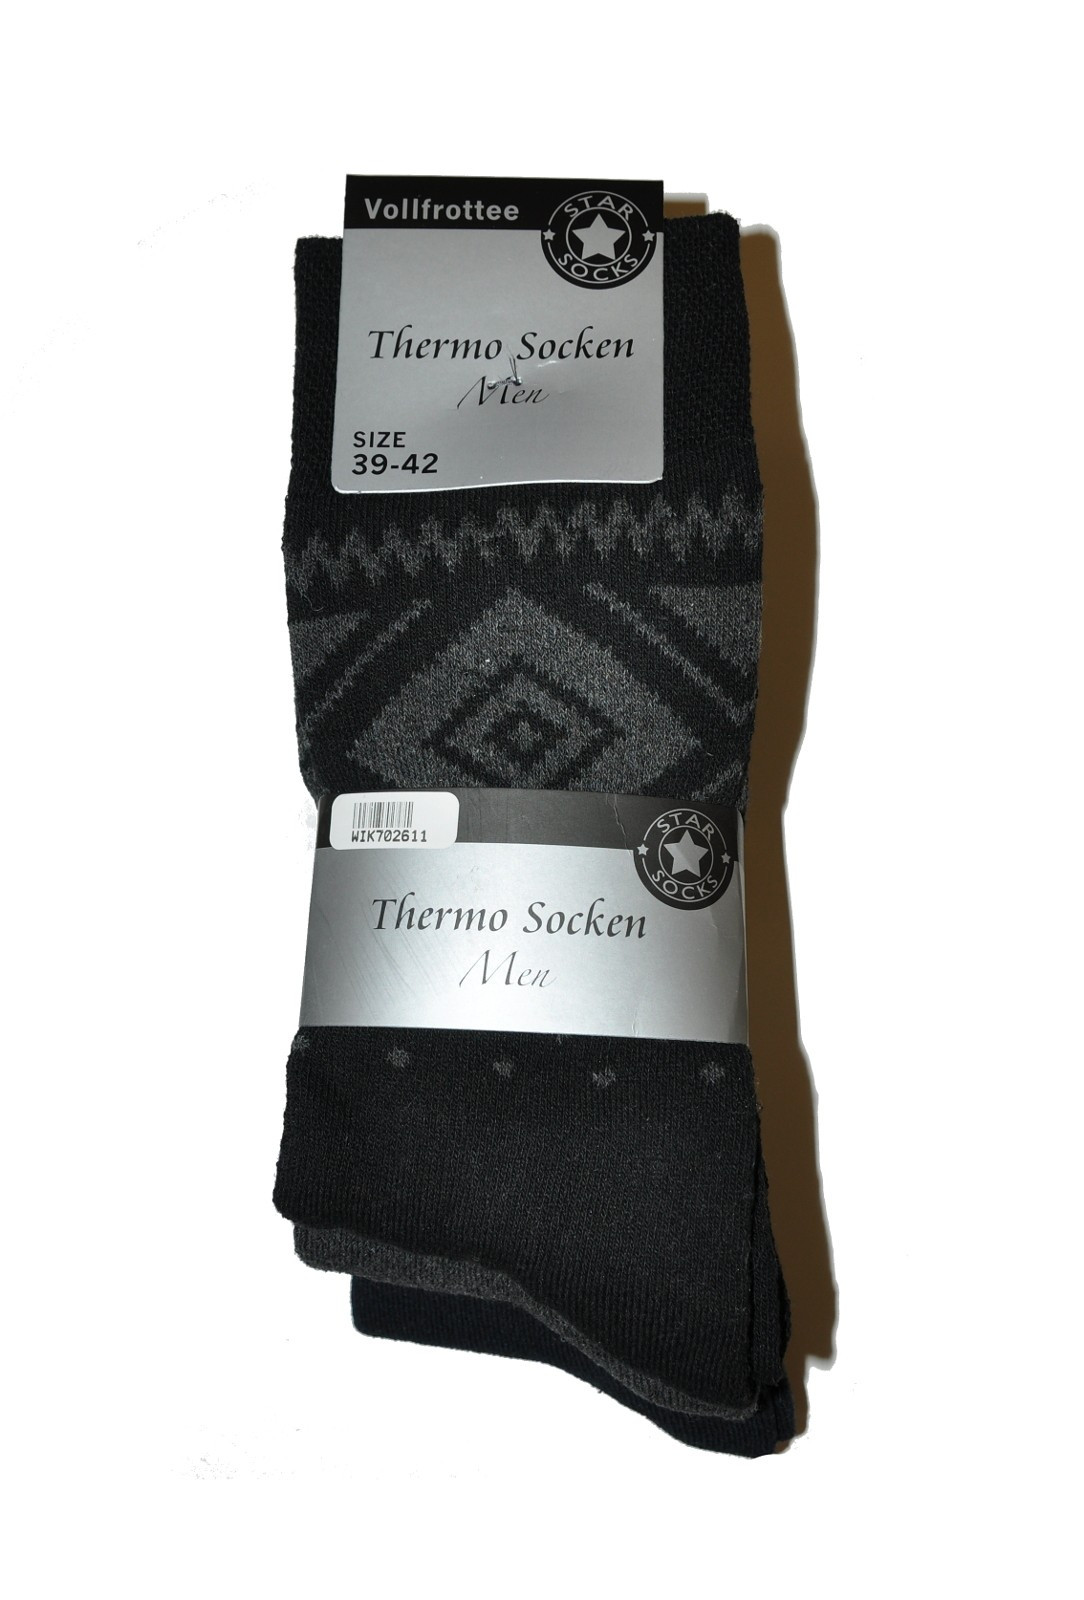 Pánské ponožky Wik Thermo Socken Men 7026 A'3 směs barev 43-46